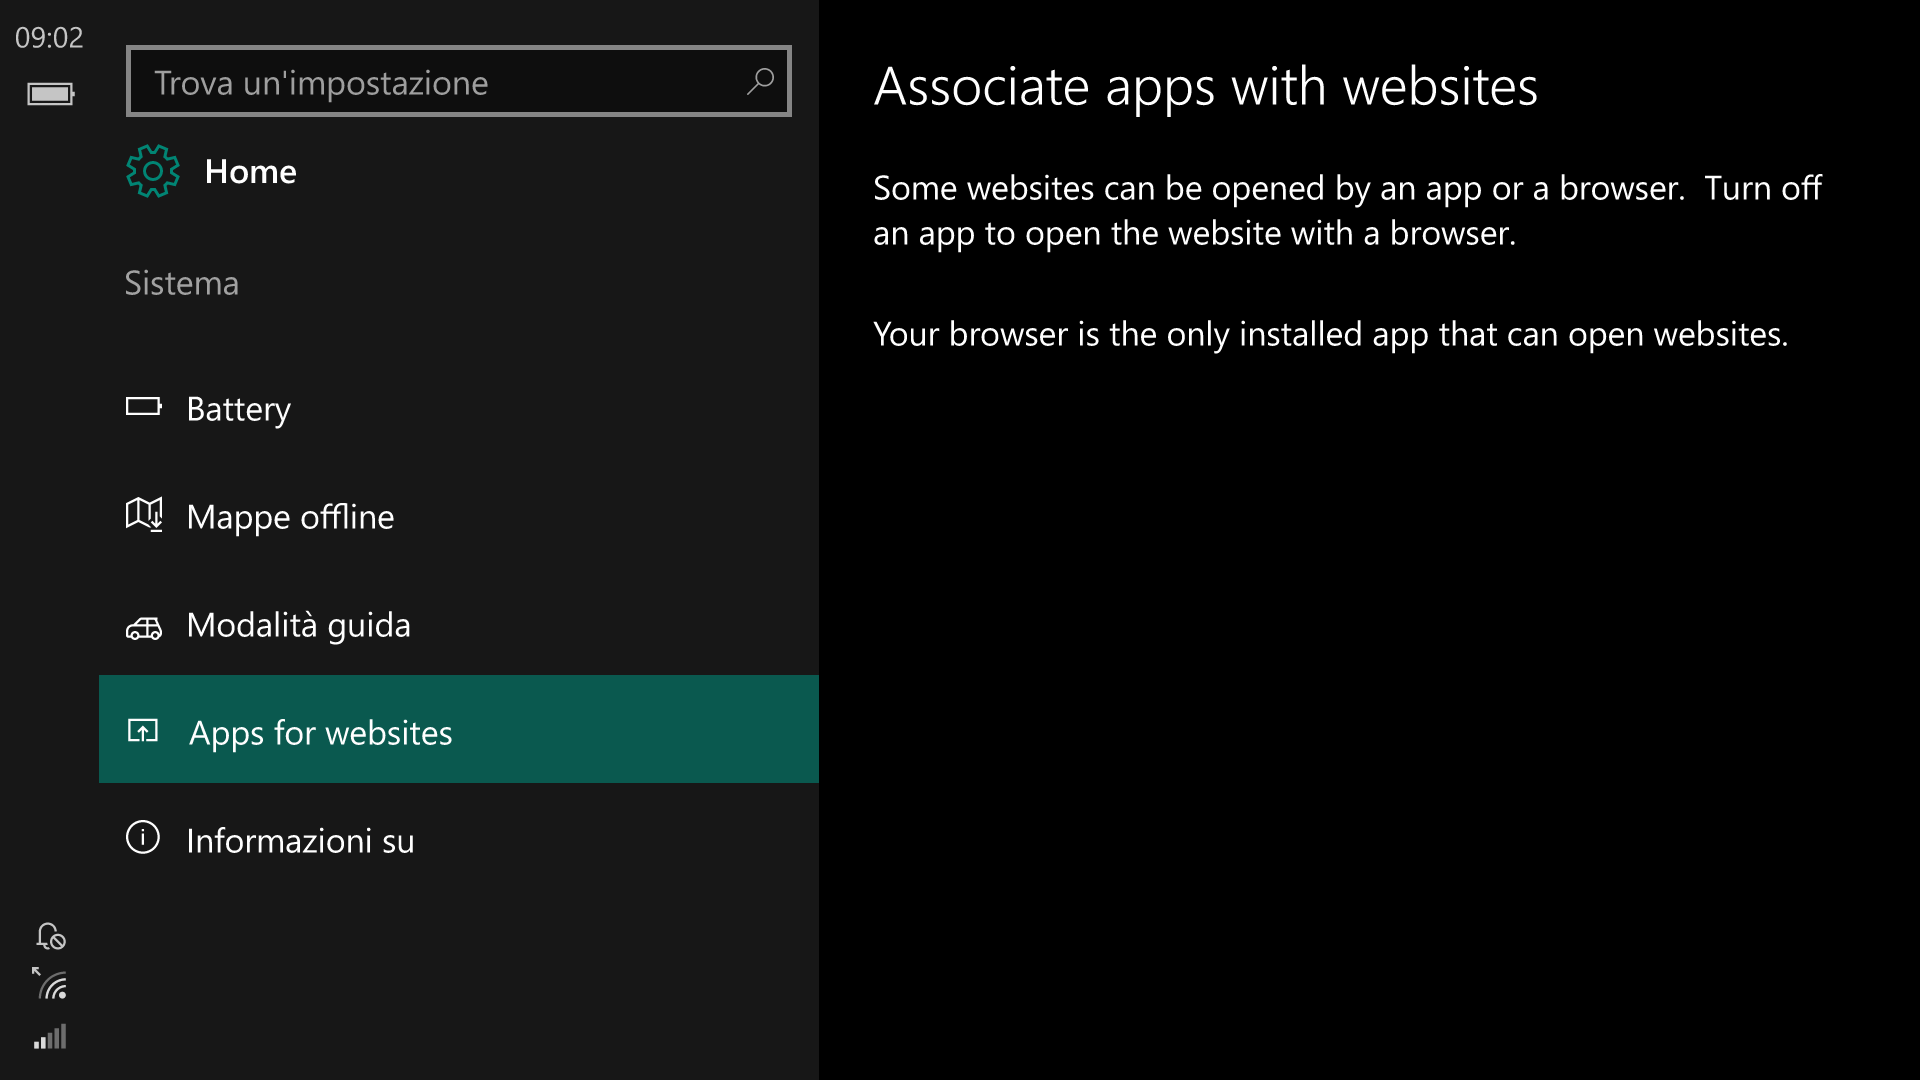 Impostazioni - Windows 10 Mobile 14342 - App per i siti web